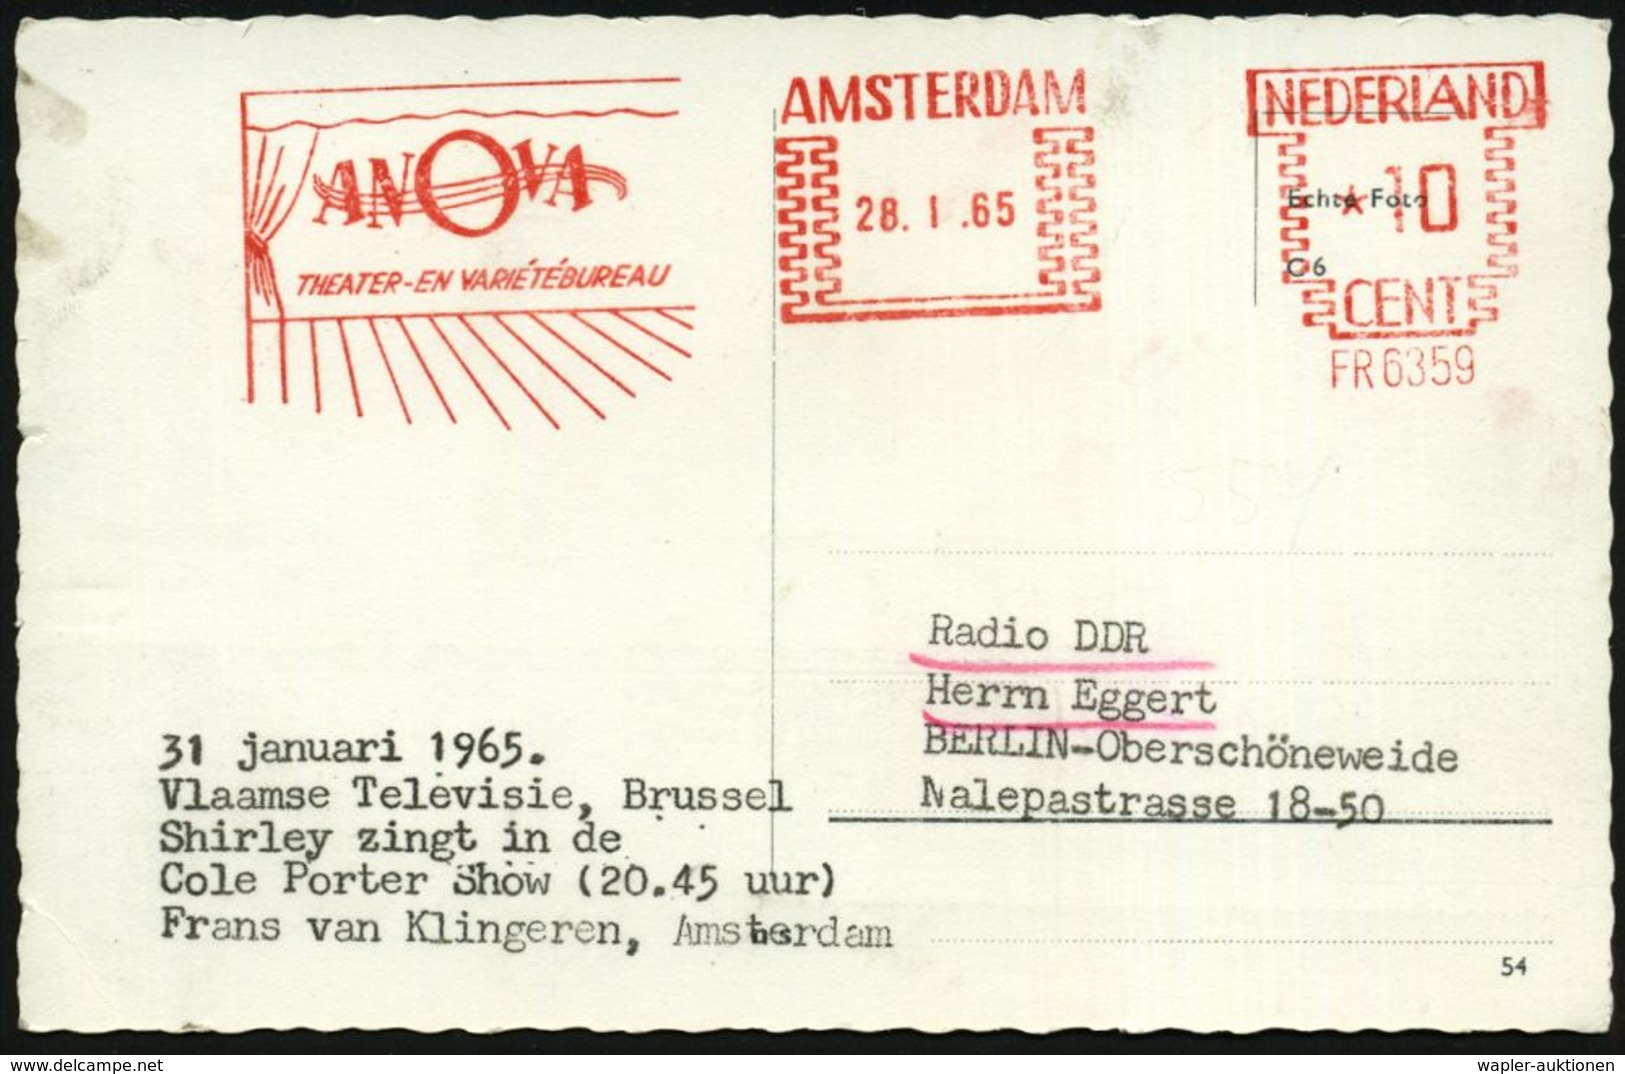 NIEDERLANDE 1965 (28.1.) AFS.: AMSTERDAM/FR 6359/ANOVA/THEATER-EN VARIETEBUREAU (Bühne) Bedarfs-Ausl.-Ak. "Cole Porter S - Zirkus